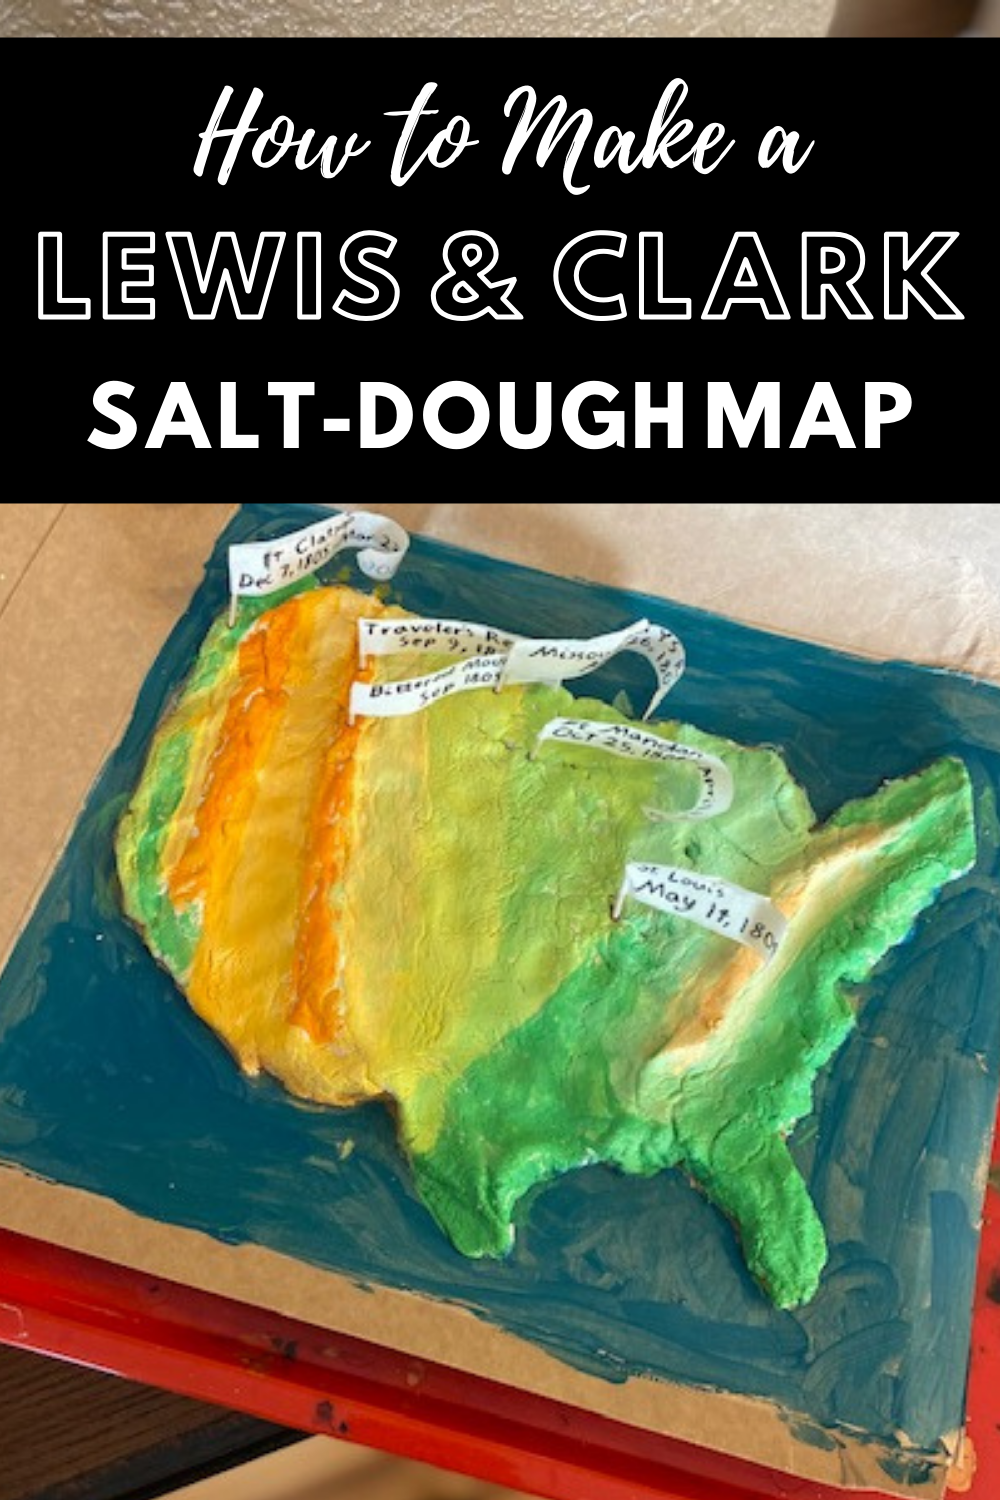 Lewis and Clark Salt-Dough Map